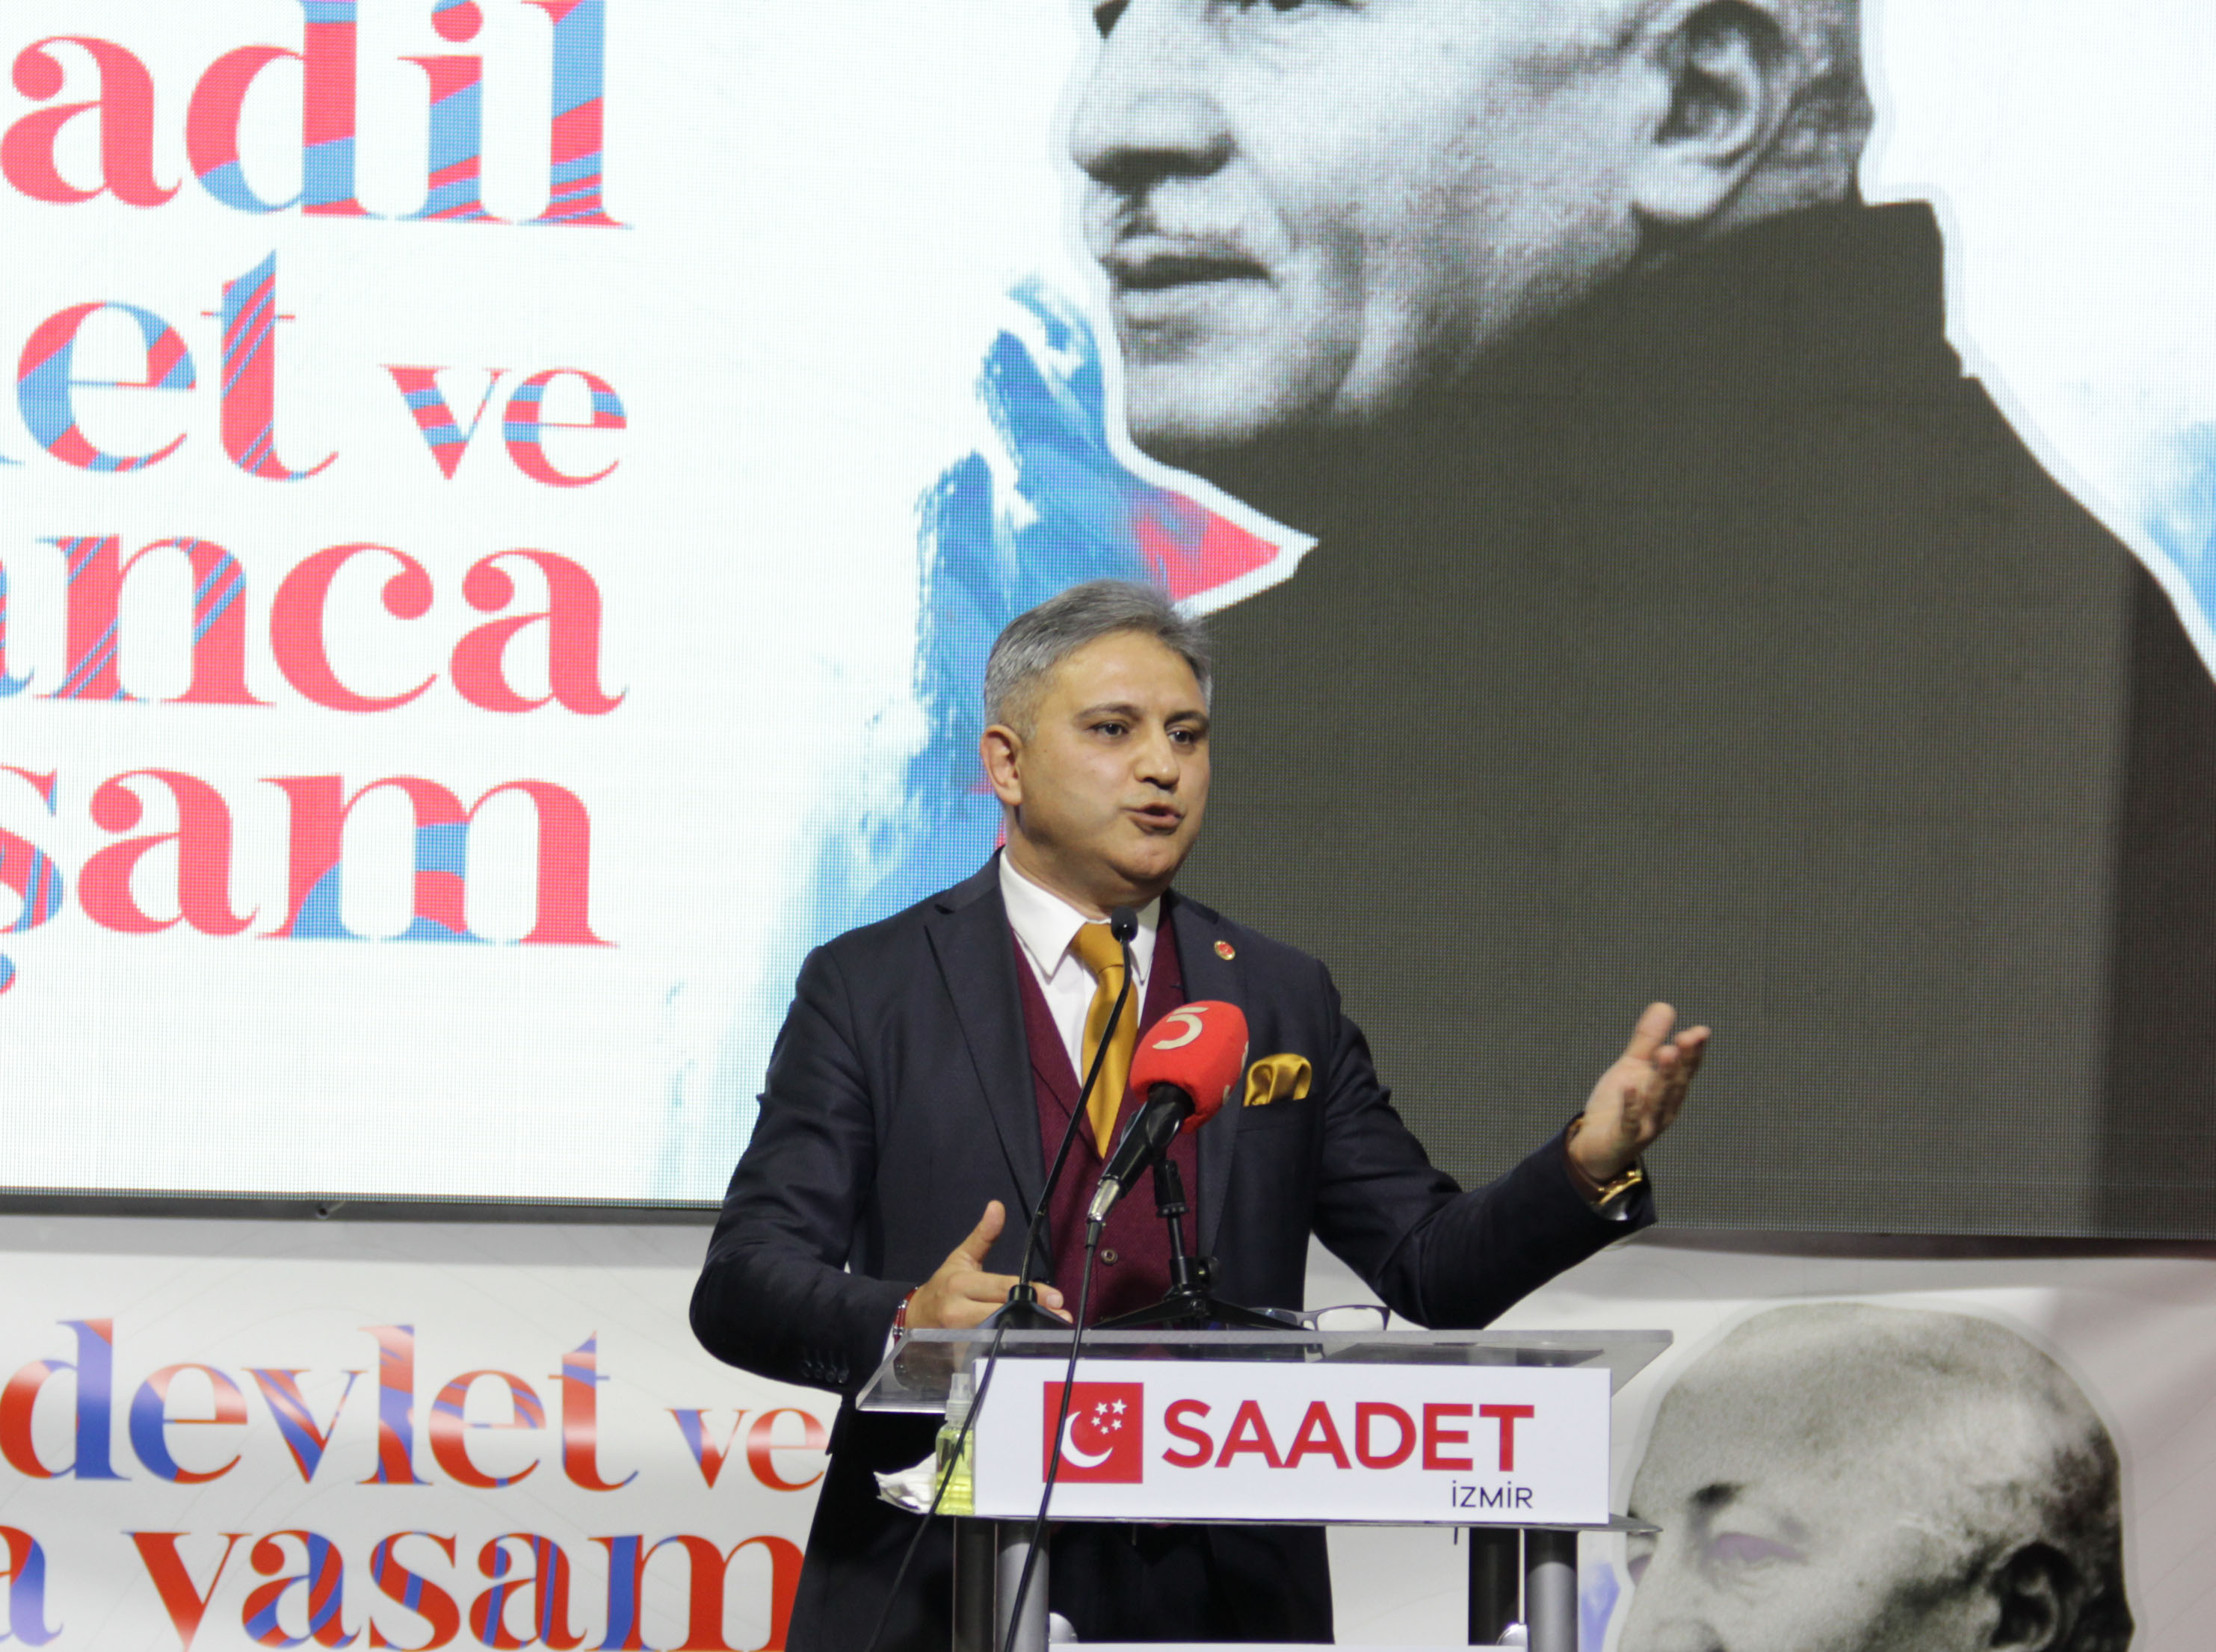 'Yeni bir dünya' ideali sunan lider Necmettin Erbakan, İzmir'de anıldı